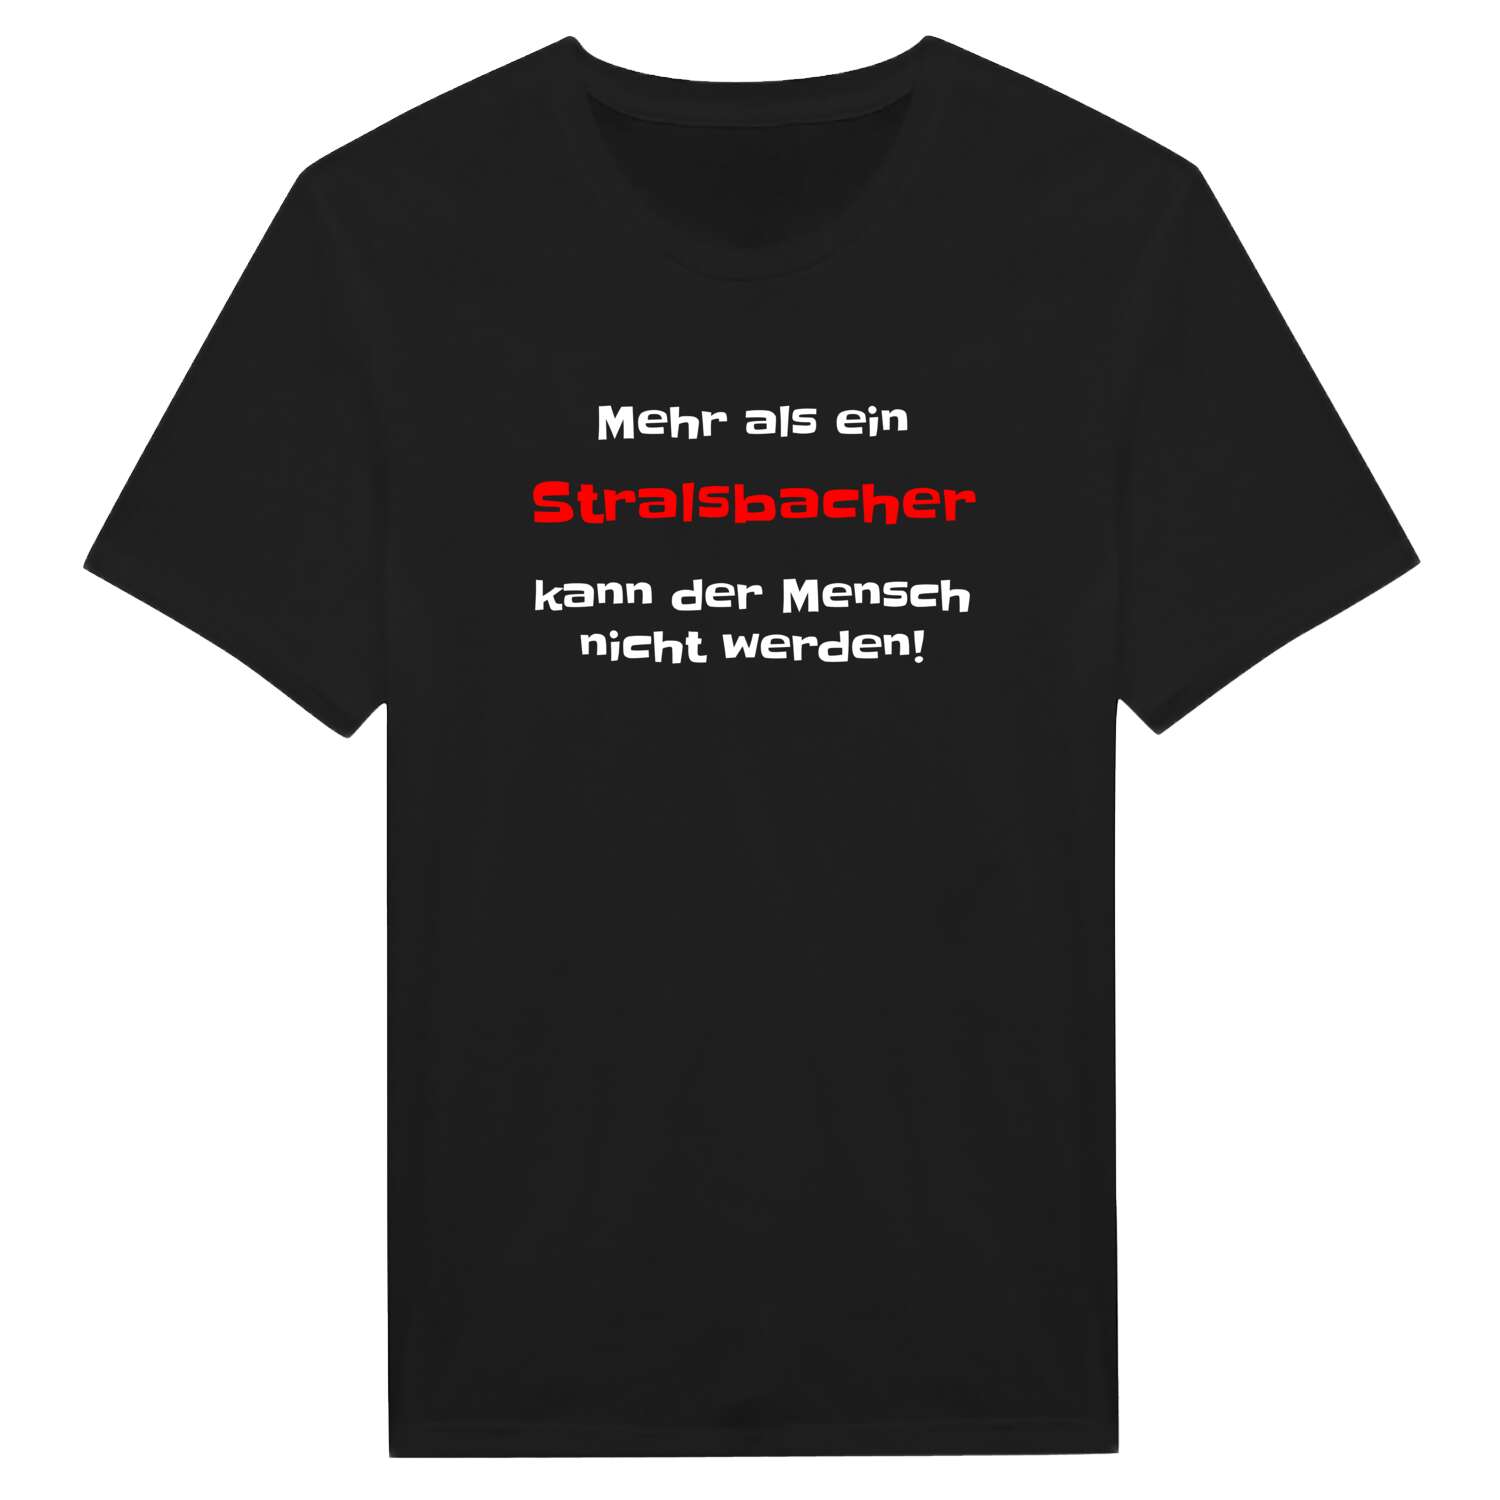 Stralsbach T-Shirt »Mehr als ein«